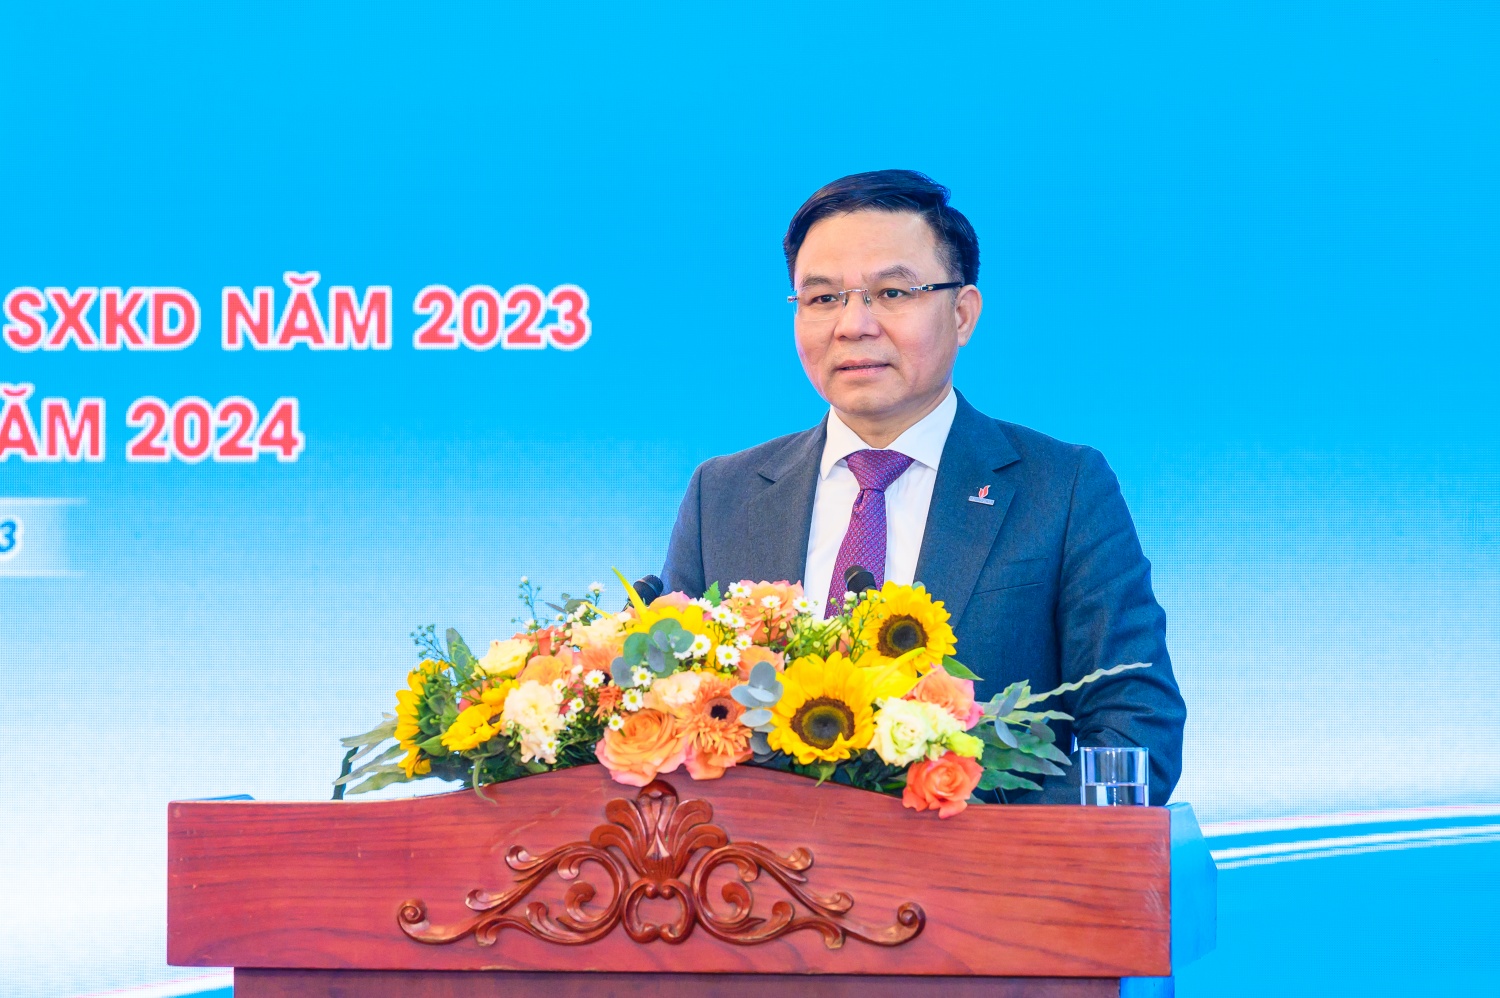 Ông Lê Mạnh Hùng – Phó Bí thư Đảng ủy, Tổng Giám đốc Tập đoàn Dầu khí Quốc gia Việt Nam chỉ đạo tại Hội nghị